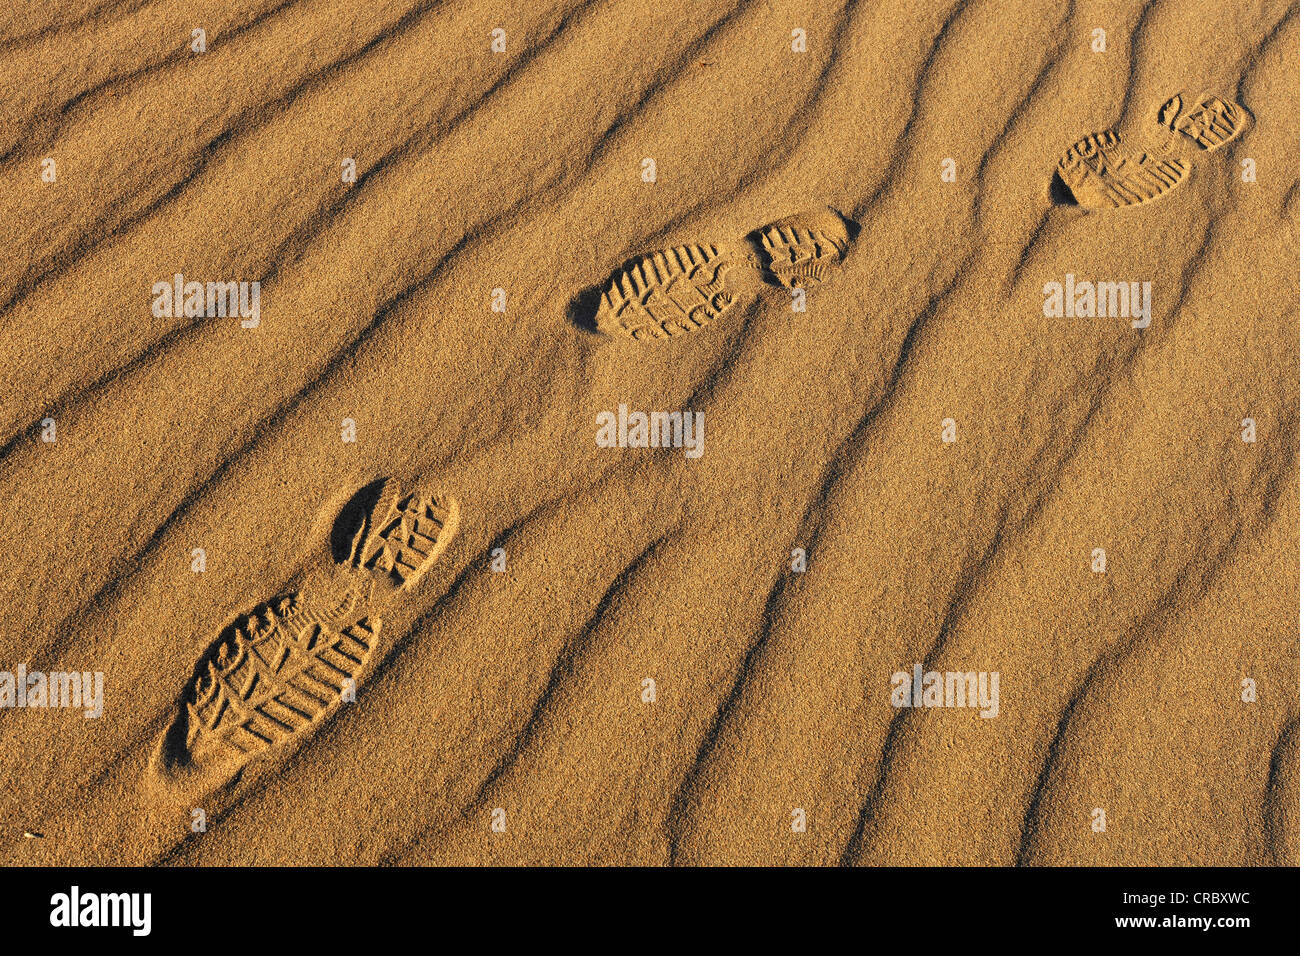 Des empreintes de pas dans les sables de la télévision Mesquite Sand Dunes, Stovepipe Wells, Death Valley National Park, désert de Mojave, Californie Banque D'Images